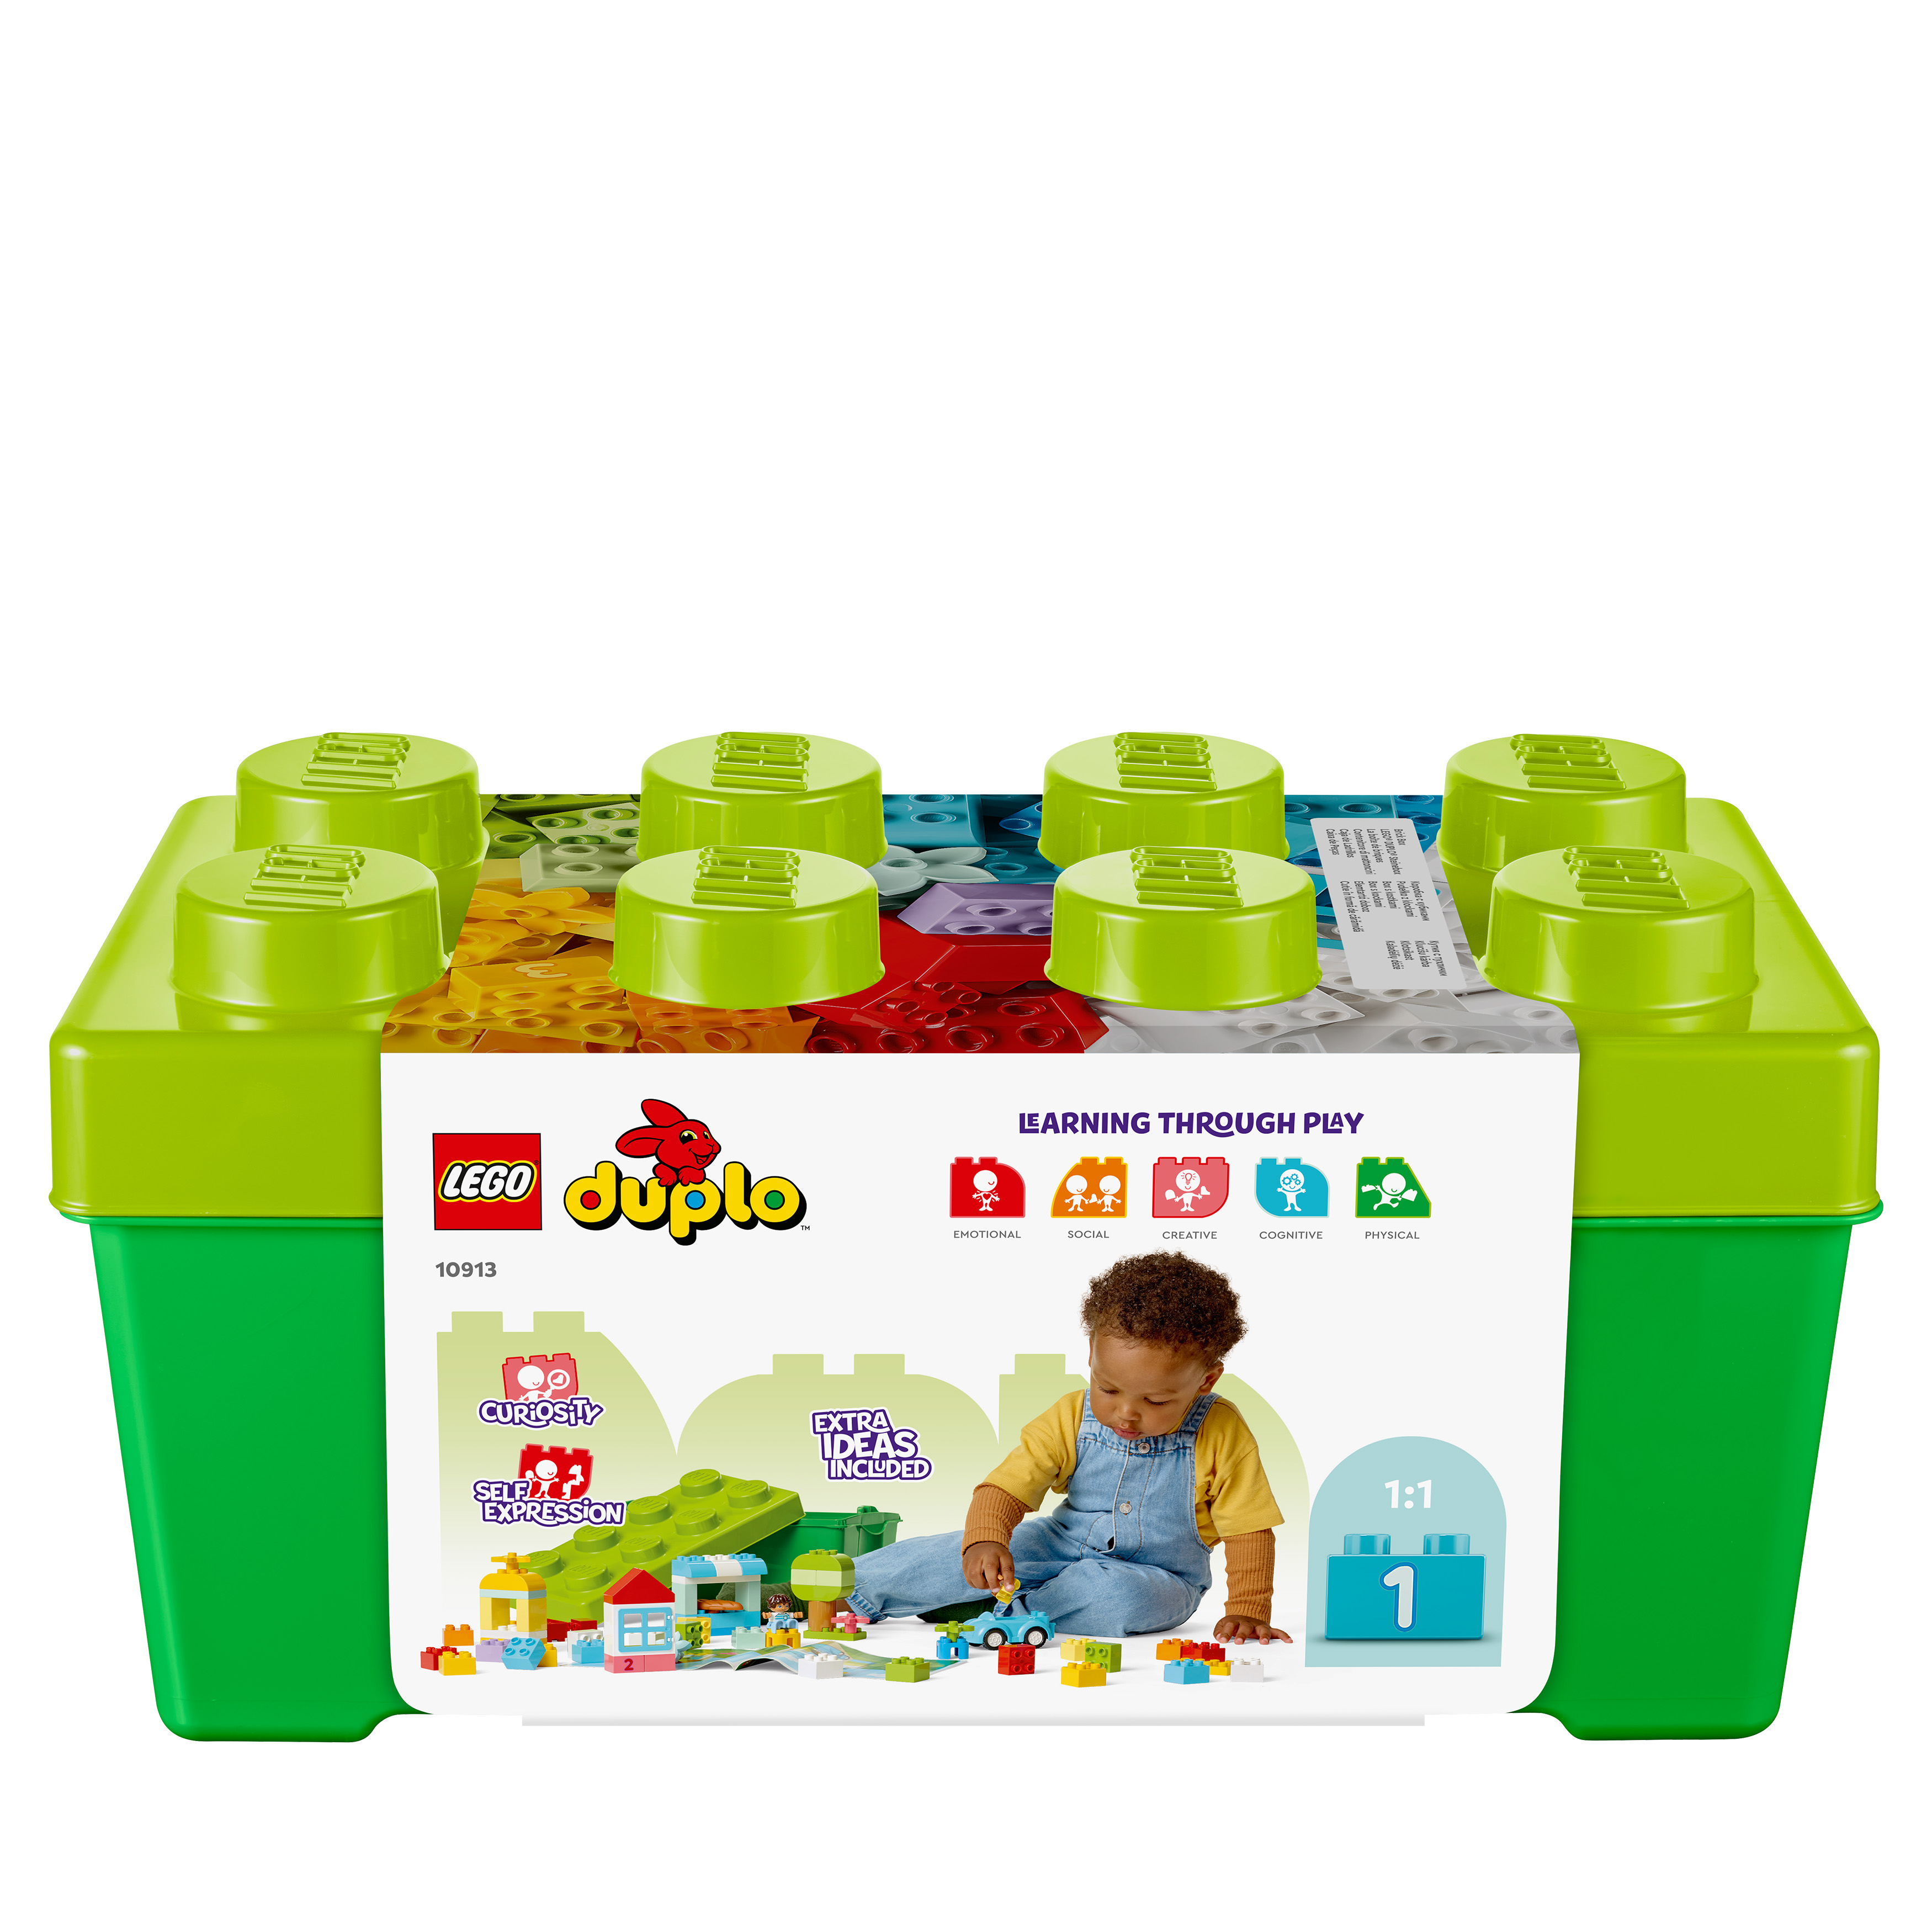 Mehrfarbig 10913 DUPLO® Bausatz, Steinebox LEGO